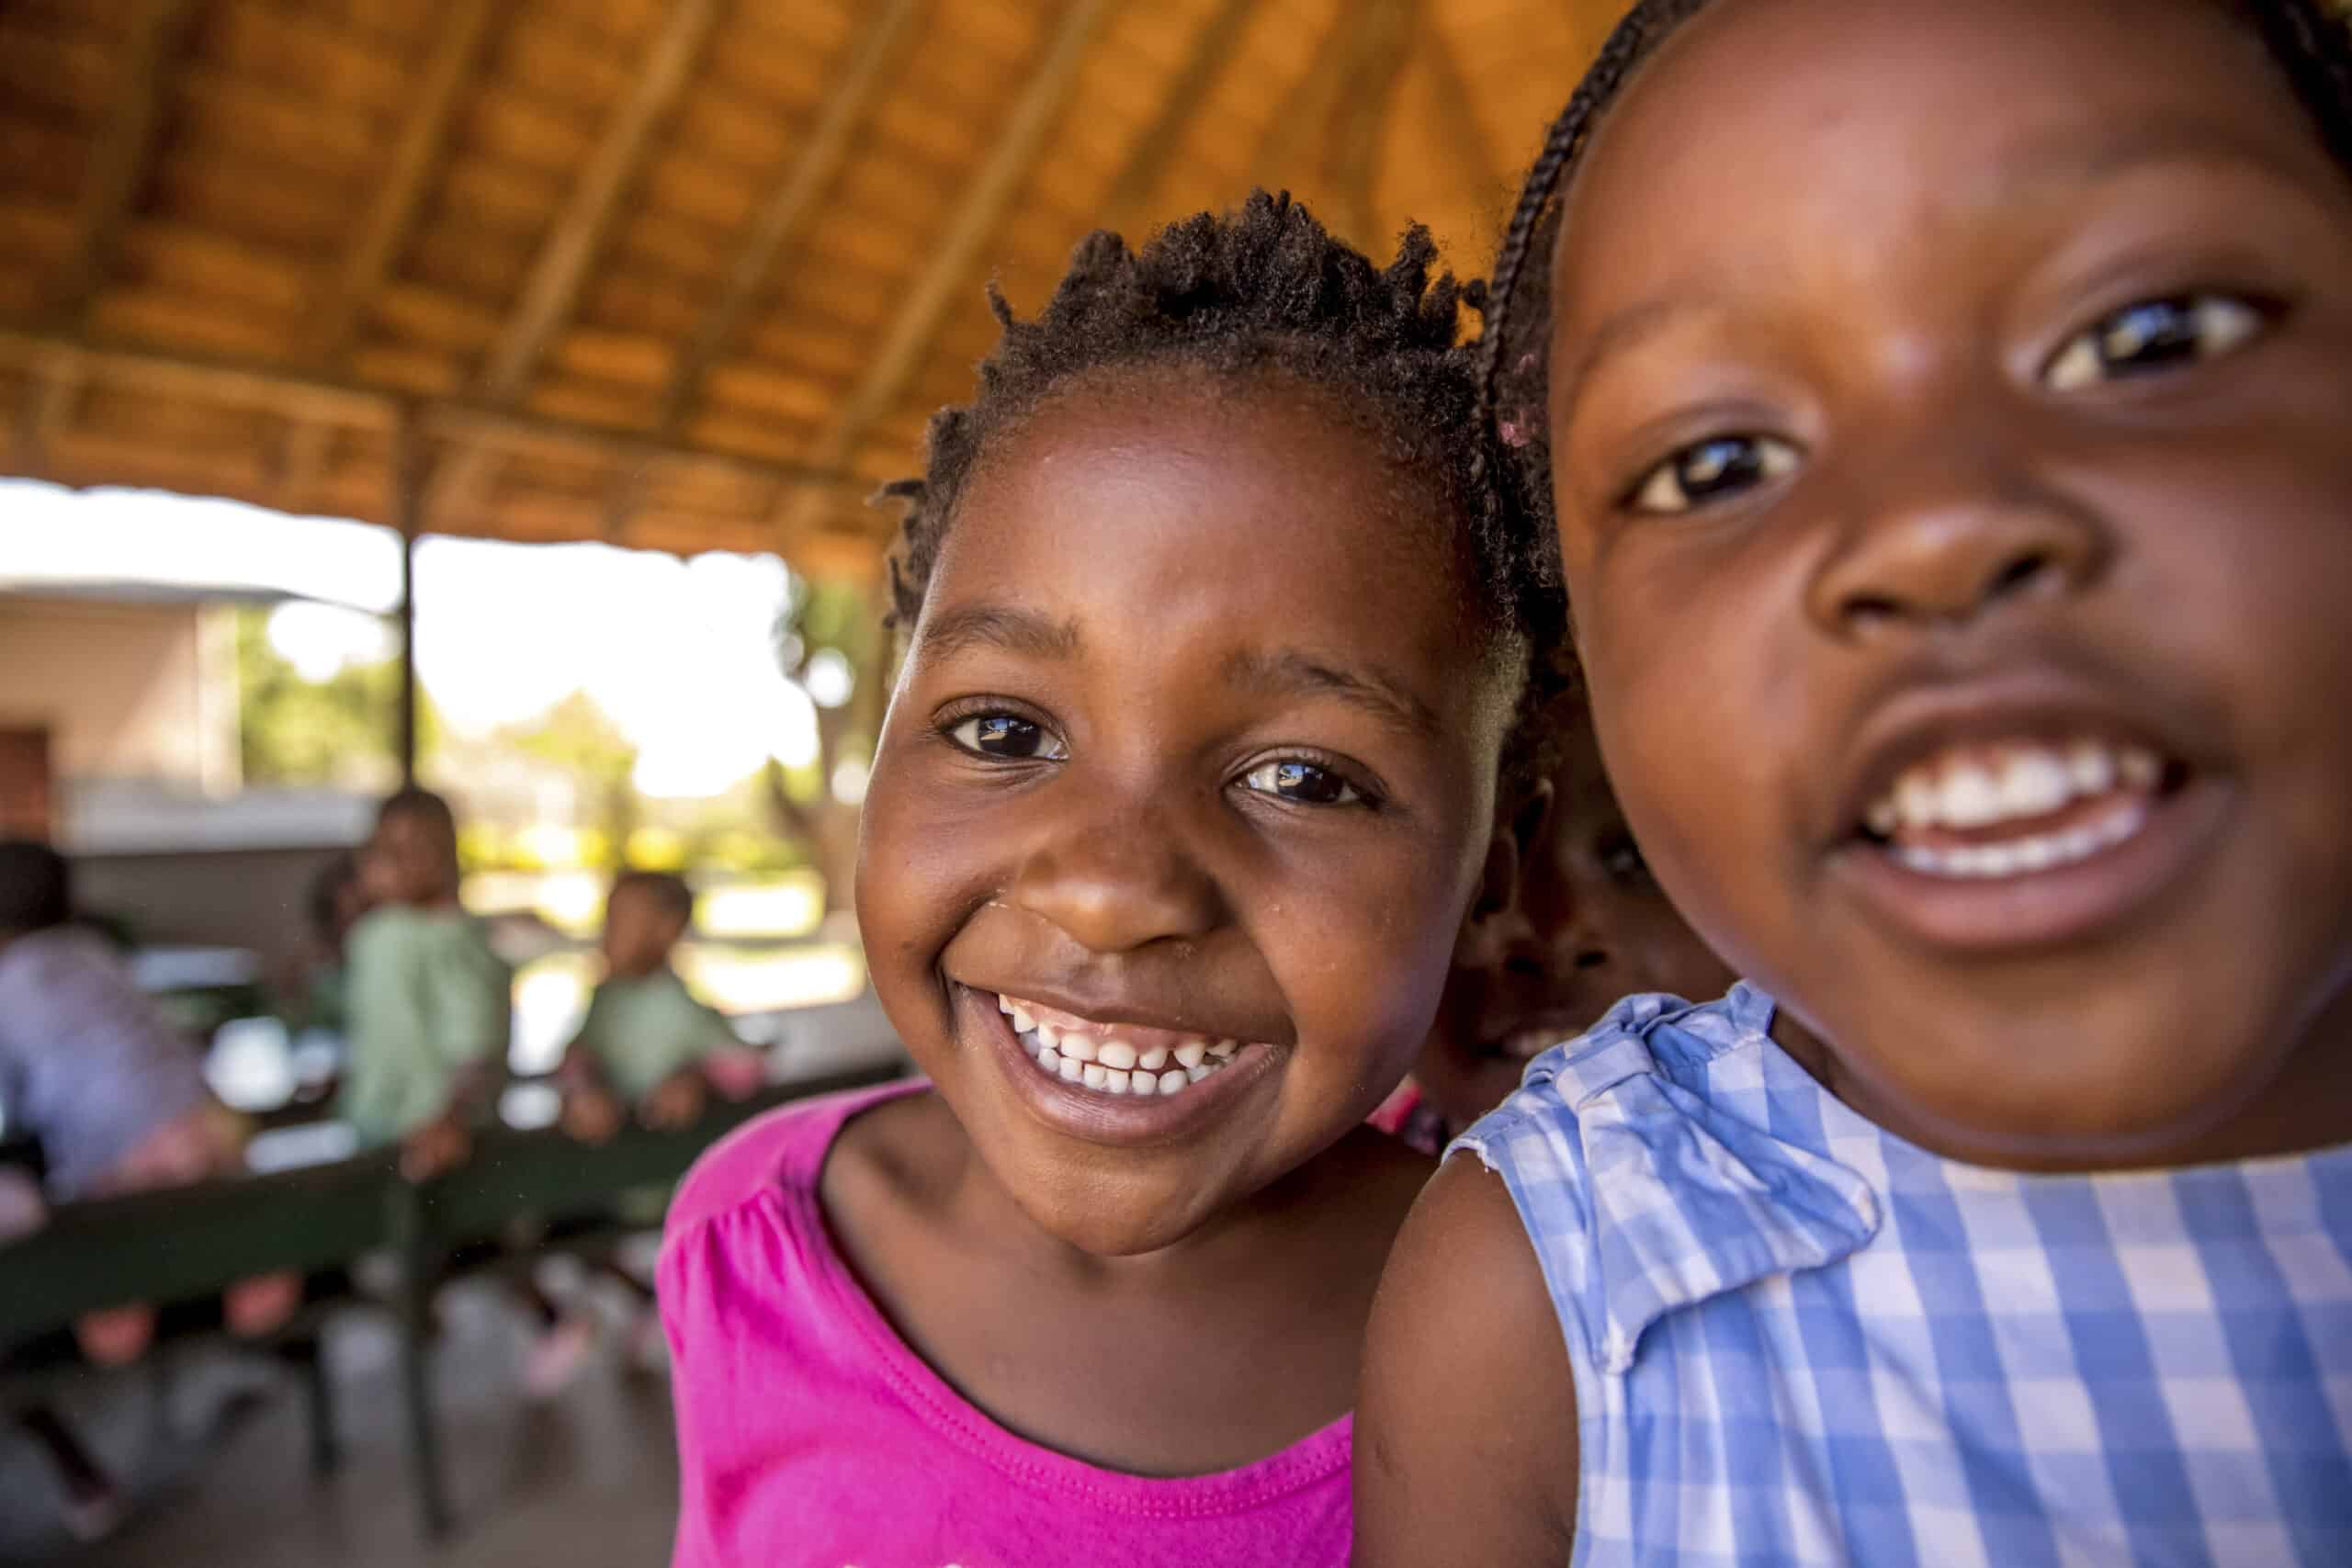 Zwei fröhliche junge Mädchen lächeln in die Kamera. Eines trägt ein rosa Oberteil und das andere ein blau-weiß gestreiftes Oberteil. Sie befinden sich in einem Holzpavillon mit den anderen Mädchen im Hintergrund. © Fotografie Tomas Rodriguez